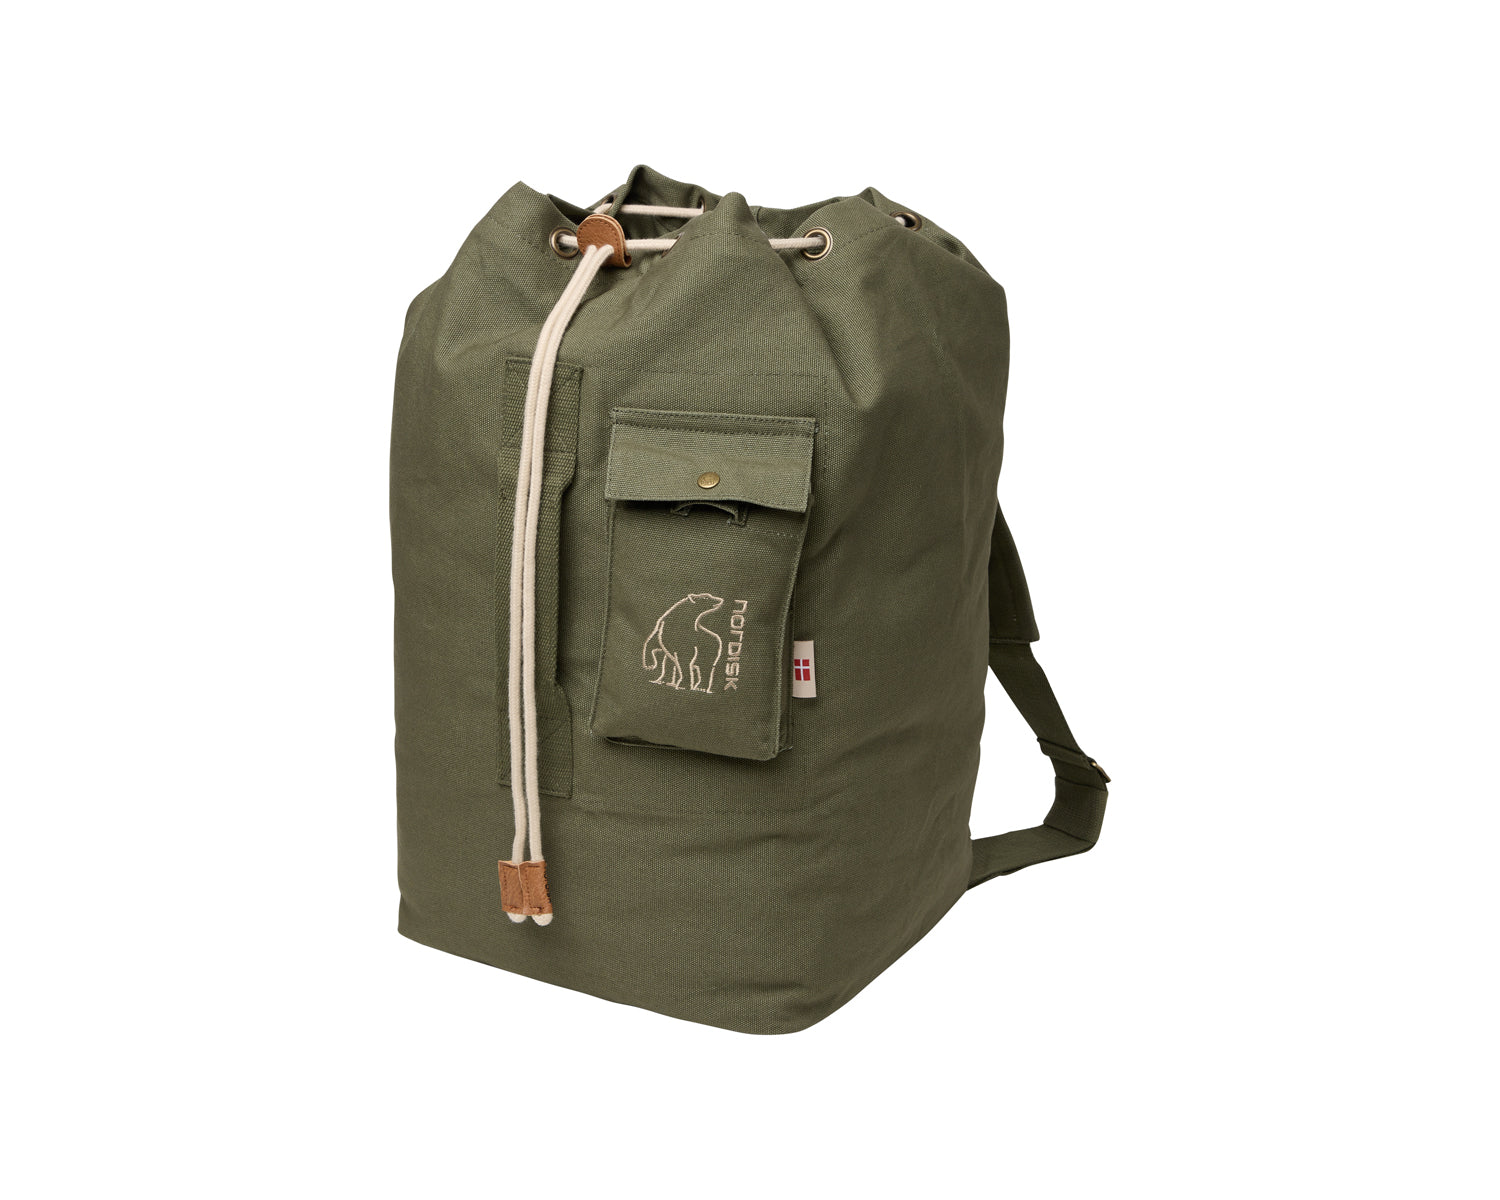 Kongsberg 40 duffel bag - 40 L - Four Leaf Clover